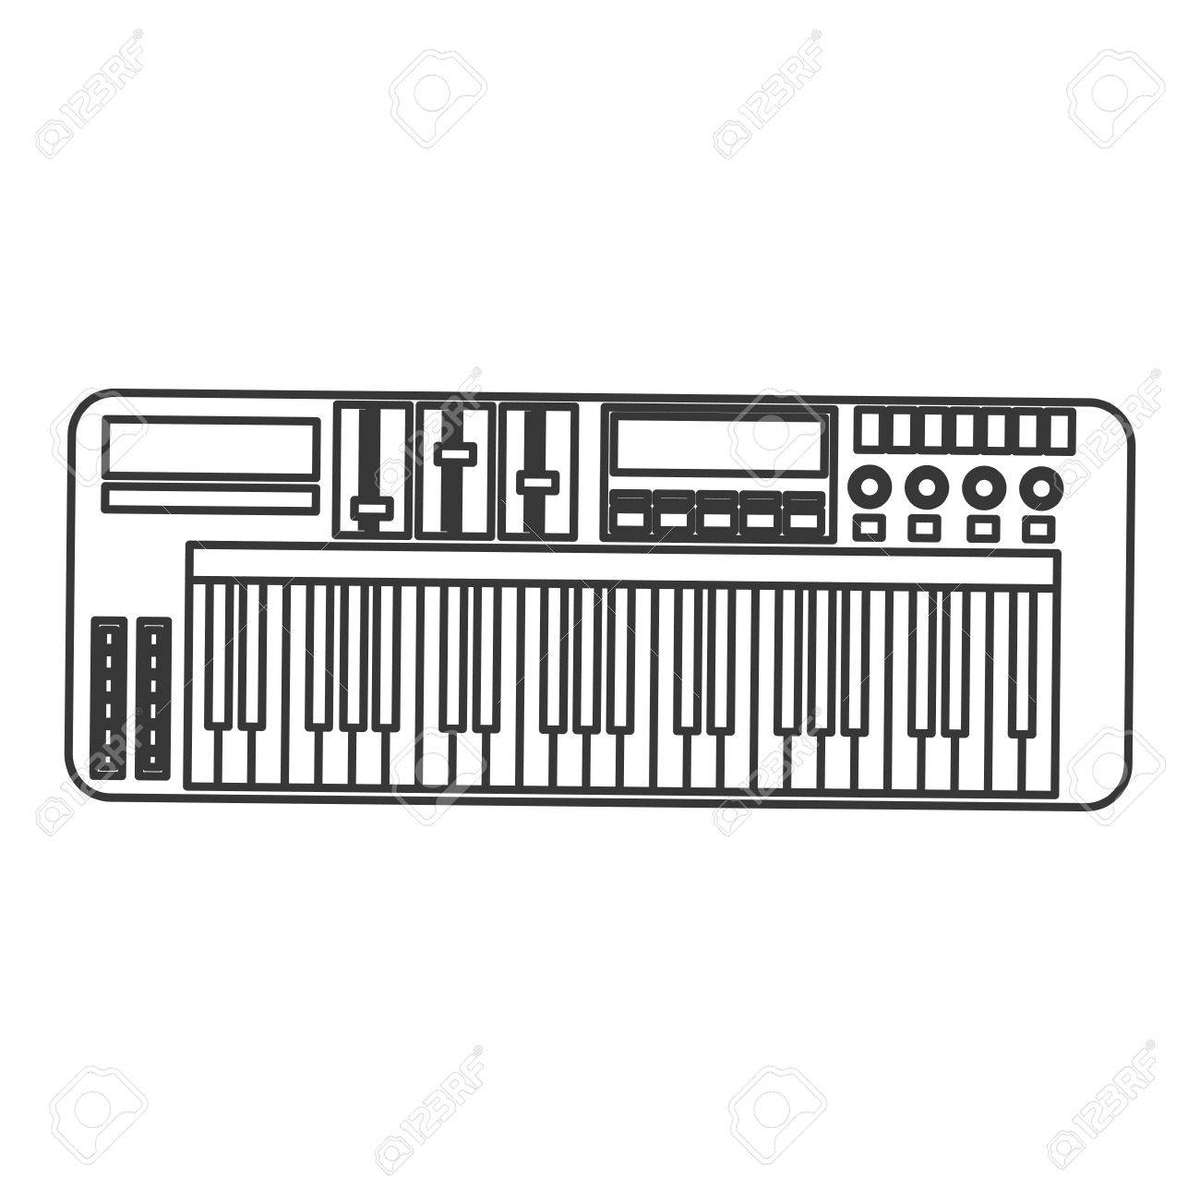 Impulso di pianoforte elettrico senza colore puzzle online